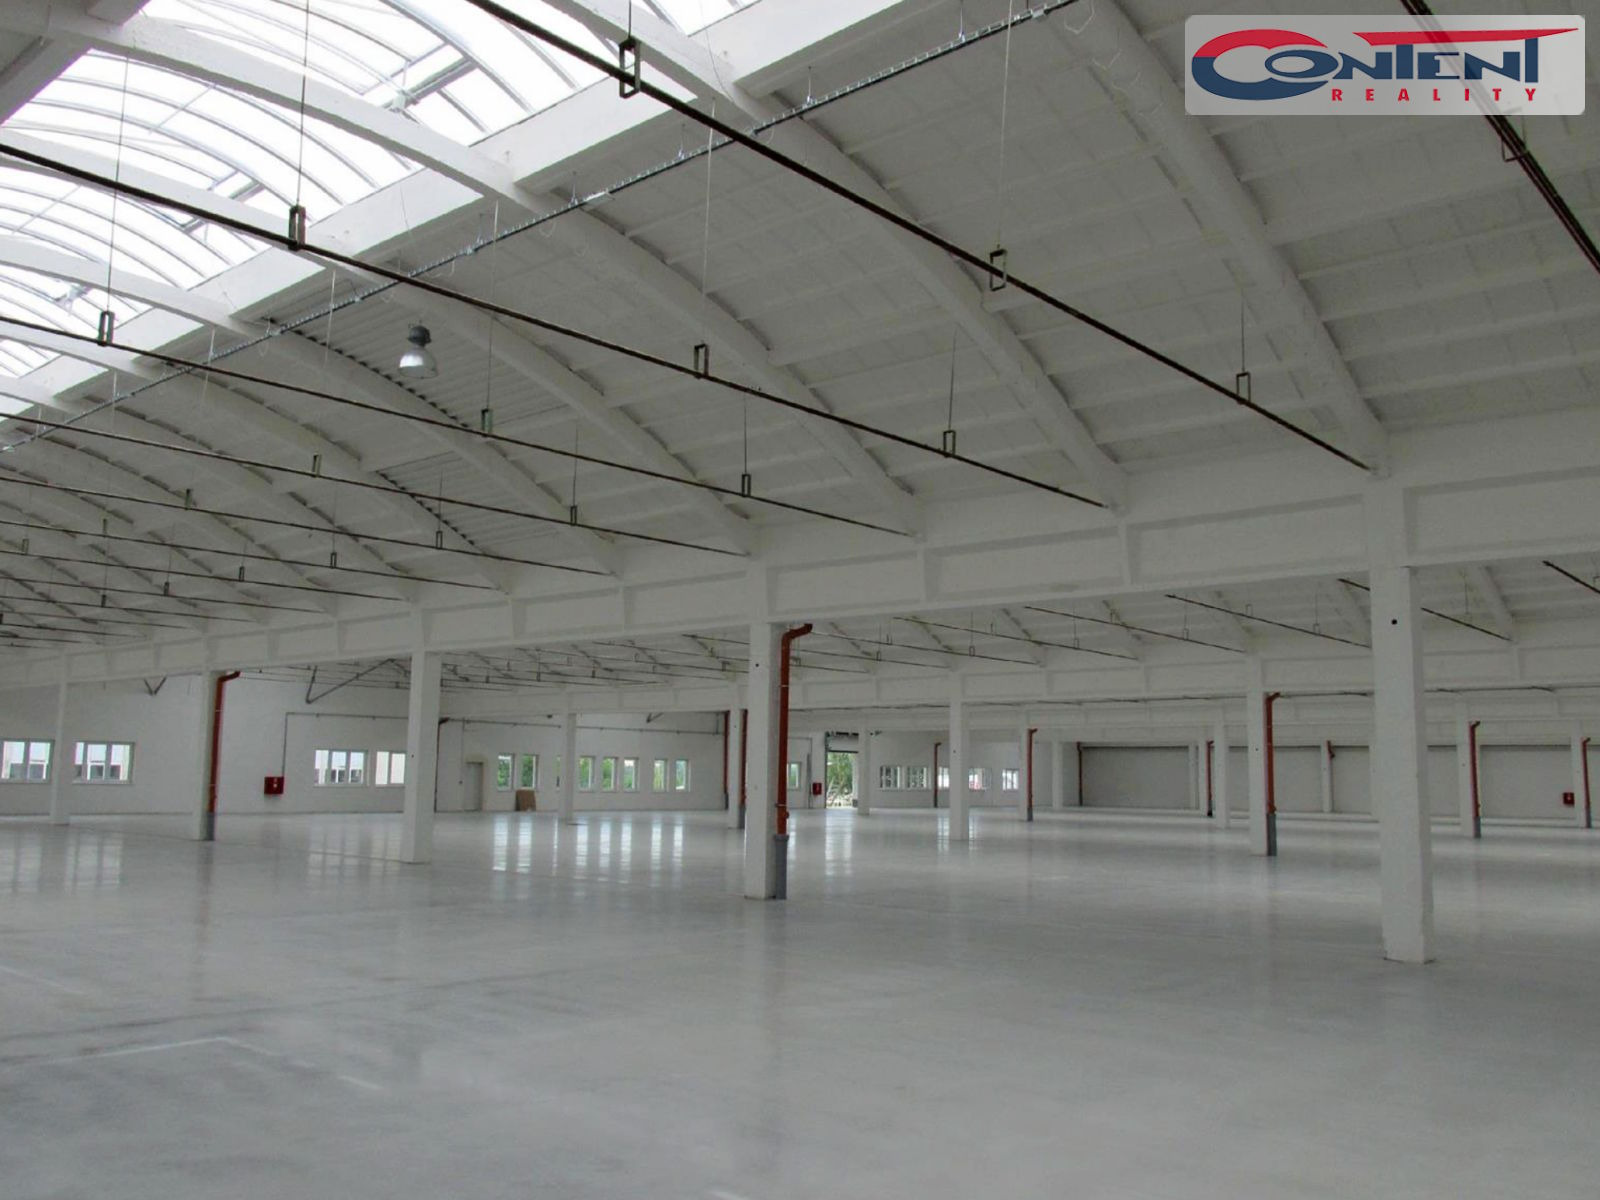 Pronájem skladu nebo výrobních prostor 1.500 m², Rousínov